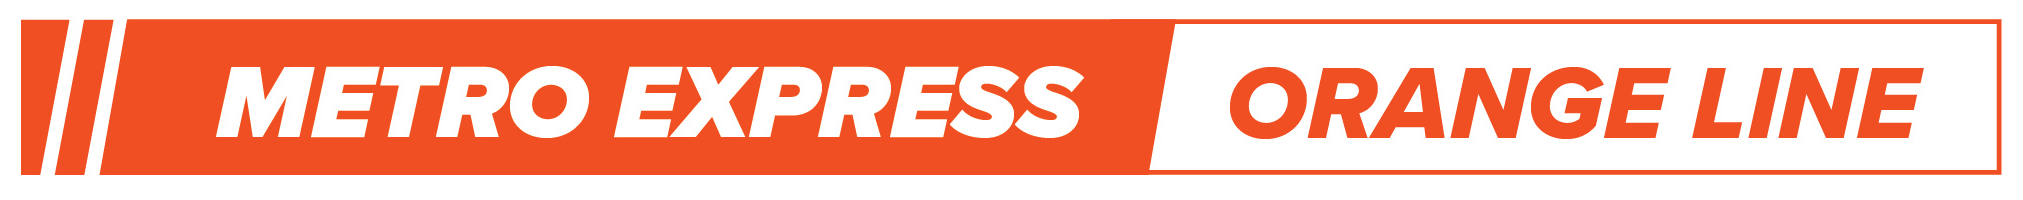 Metro Express logo